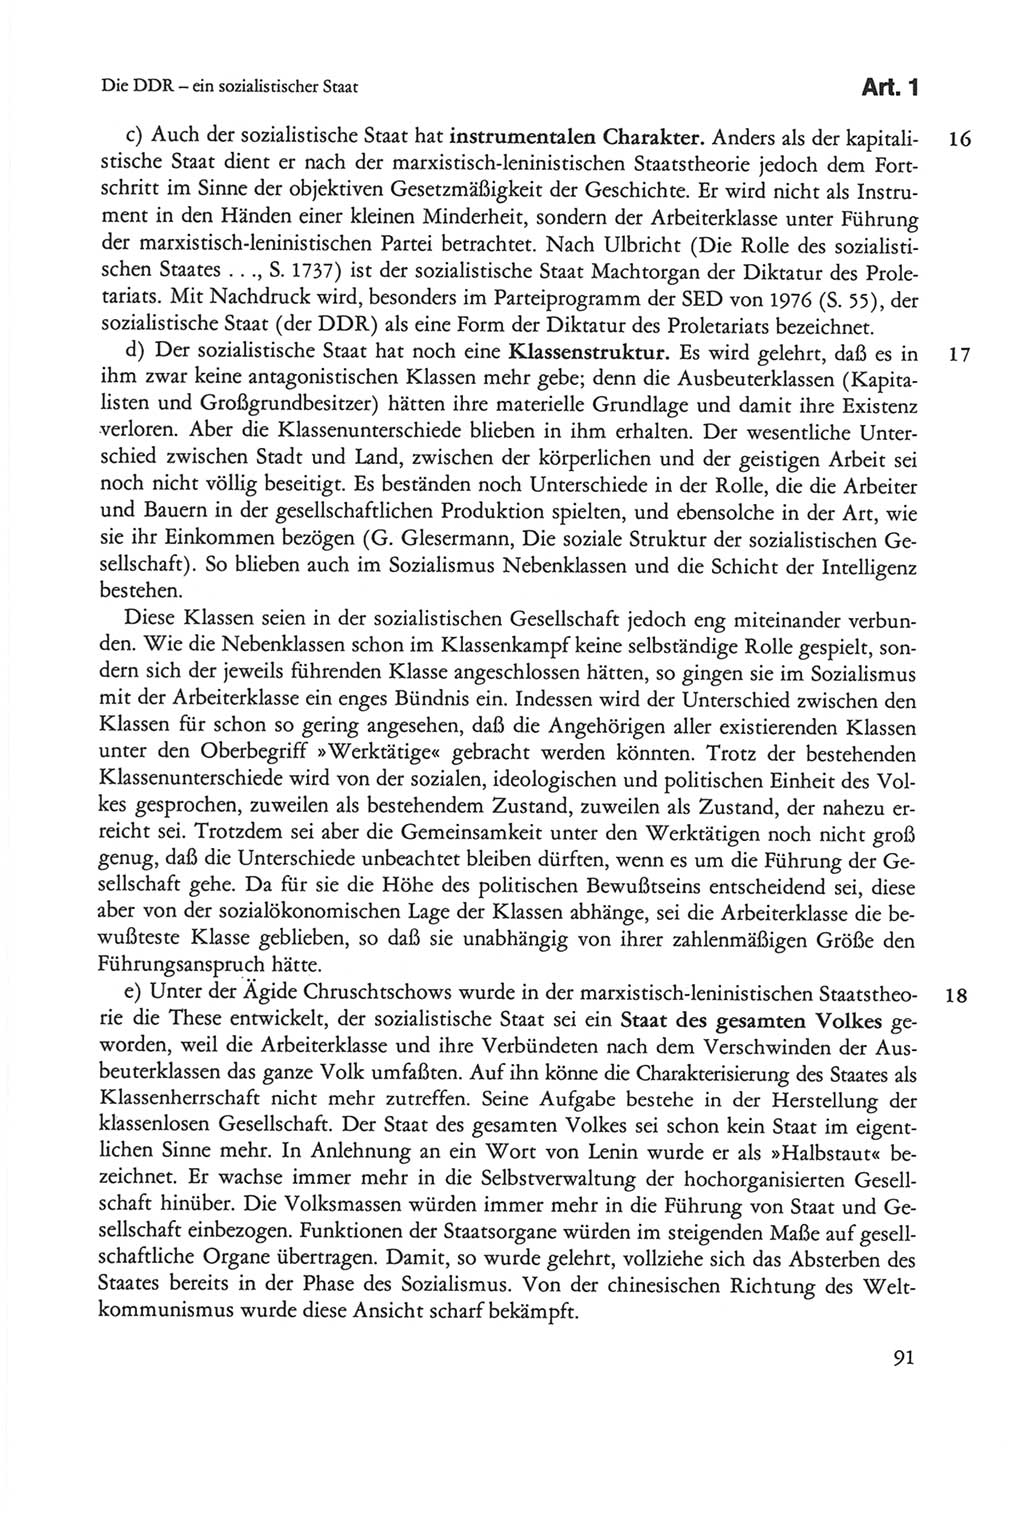 Die sozialistische Verfassung der Deutschen Demokratischen Republik (DDR), Kommentar 1982, Seite 91 (Soz. Verf. DDR Komm. 1982, S. 91)